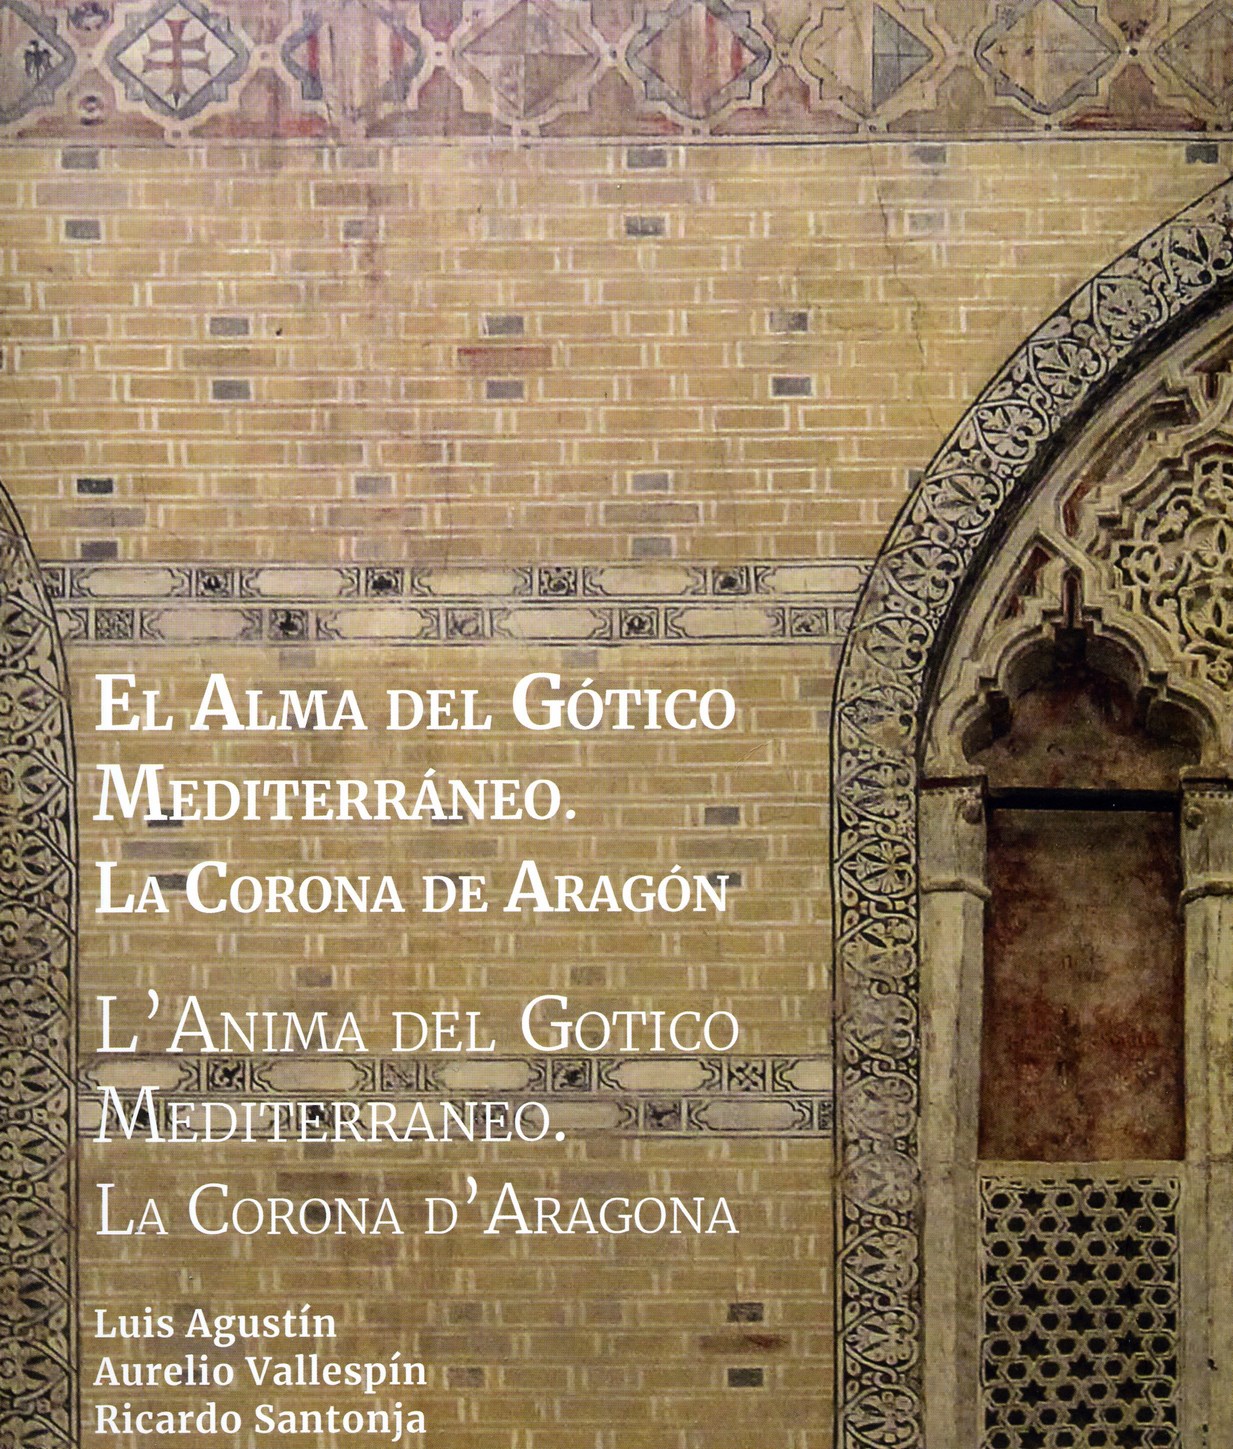 Matera, domani nel Museo di Palazzo Lanfranchi inaugurazione della mostra “L’Anima del Gotico Mediterraneo. La Corona d’Aragona” con la partecipazione dell’Ambasciatore di Spagna in Italia